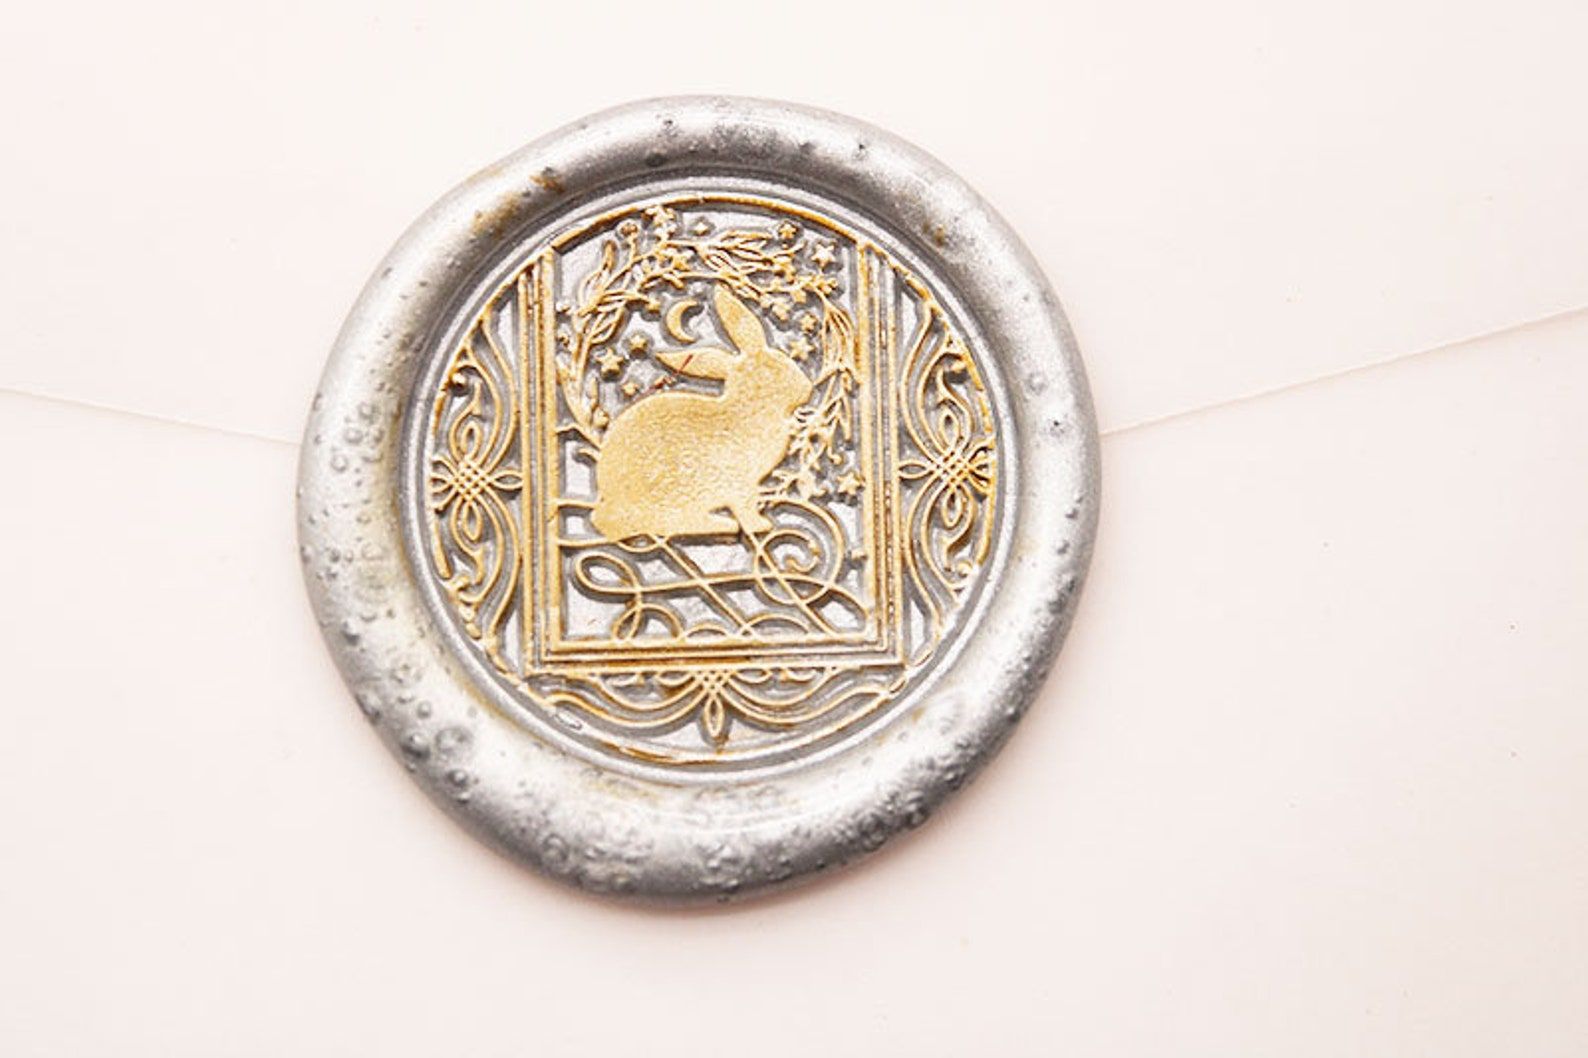 Image d'un cachet de cire en argent.  Il est en or à l'intérieur avec une image d'un lapin à l'intérieur d'une carte de tarot. 